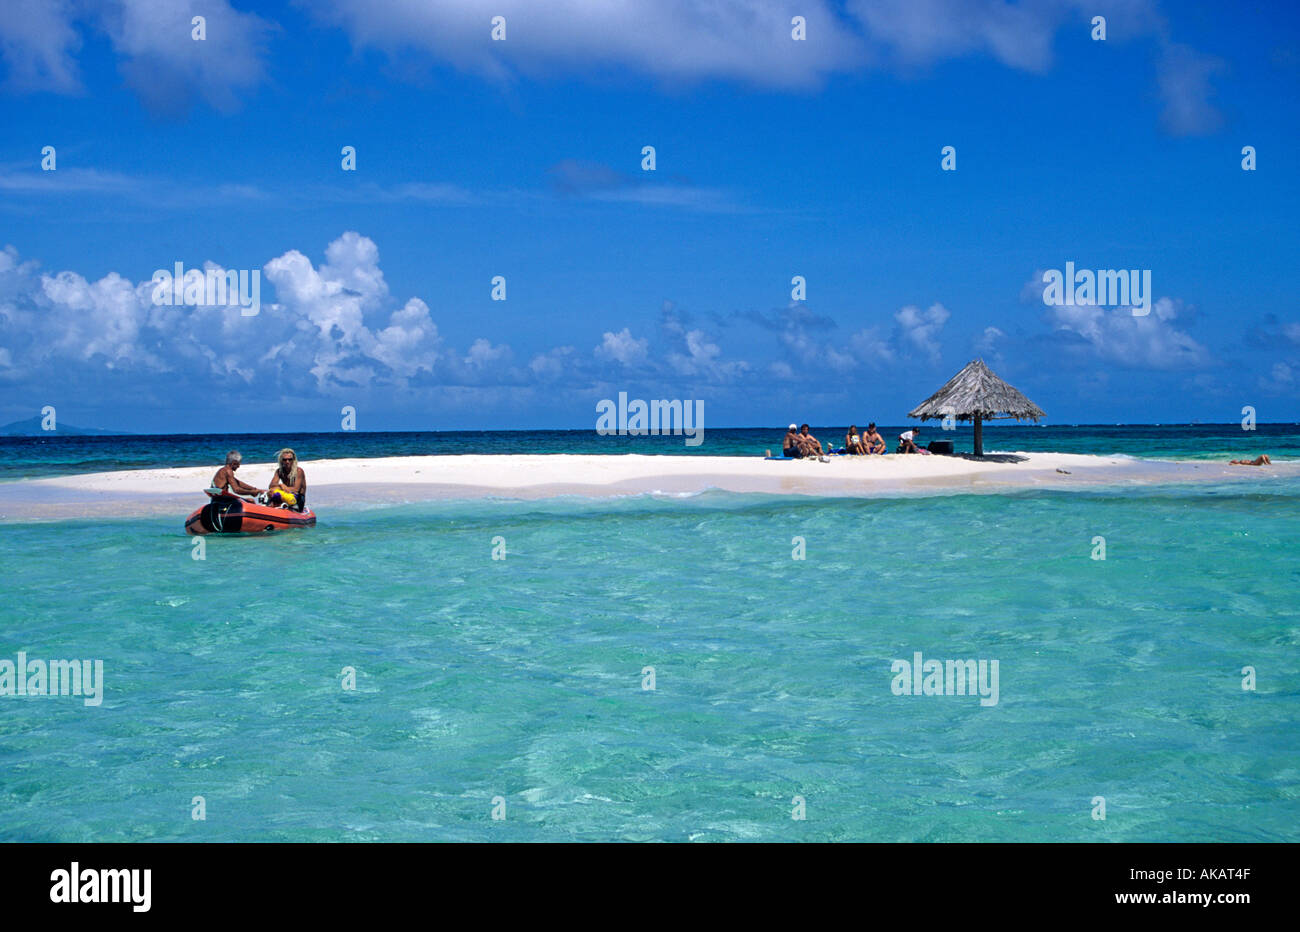 Les gens se détendre s'amuser dans des eaux cristallines St Vincent et les Grenadines minuscule îlot de Mopion Antilles Caraïbes Banque D'Images